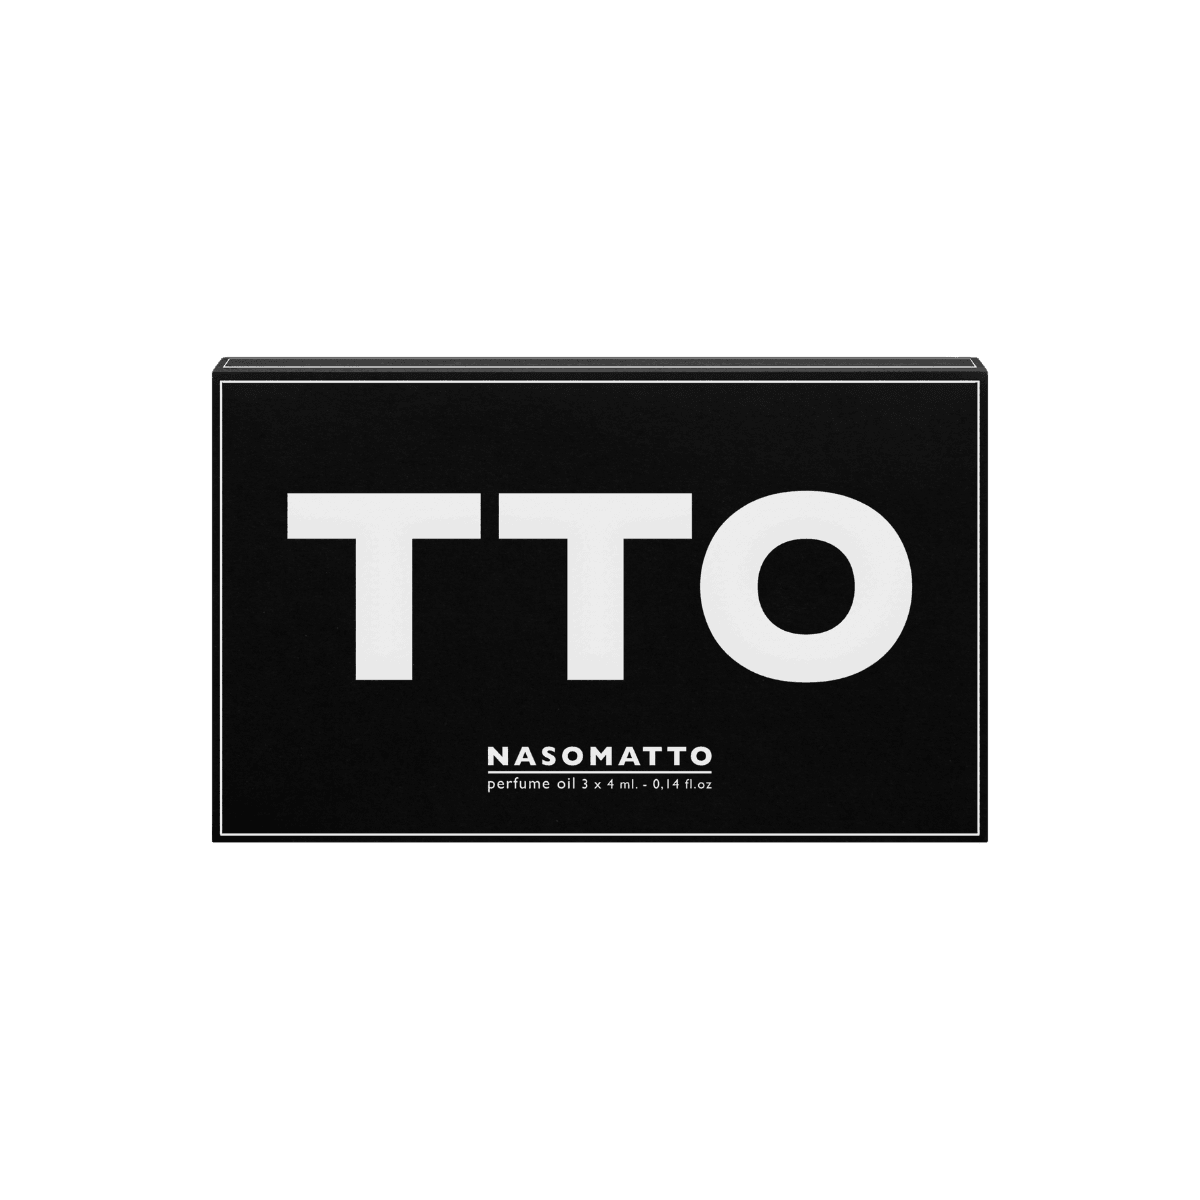 Nasomatto - TTO set with Duro, Silver Musk and Baraonda